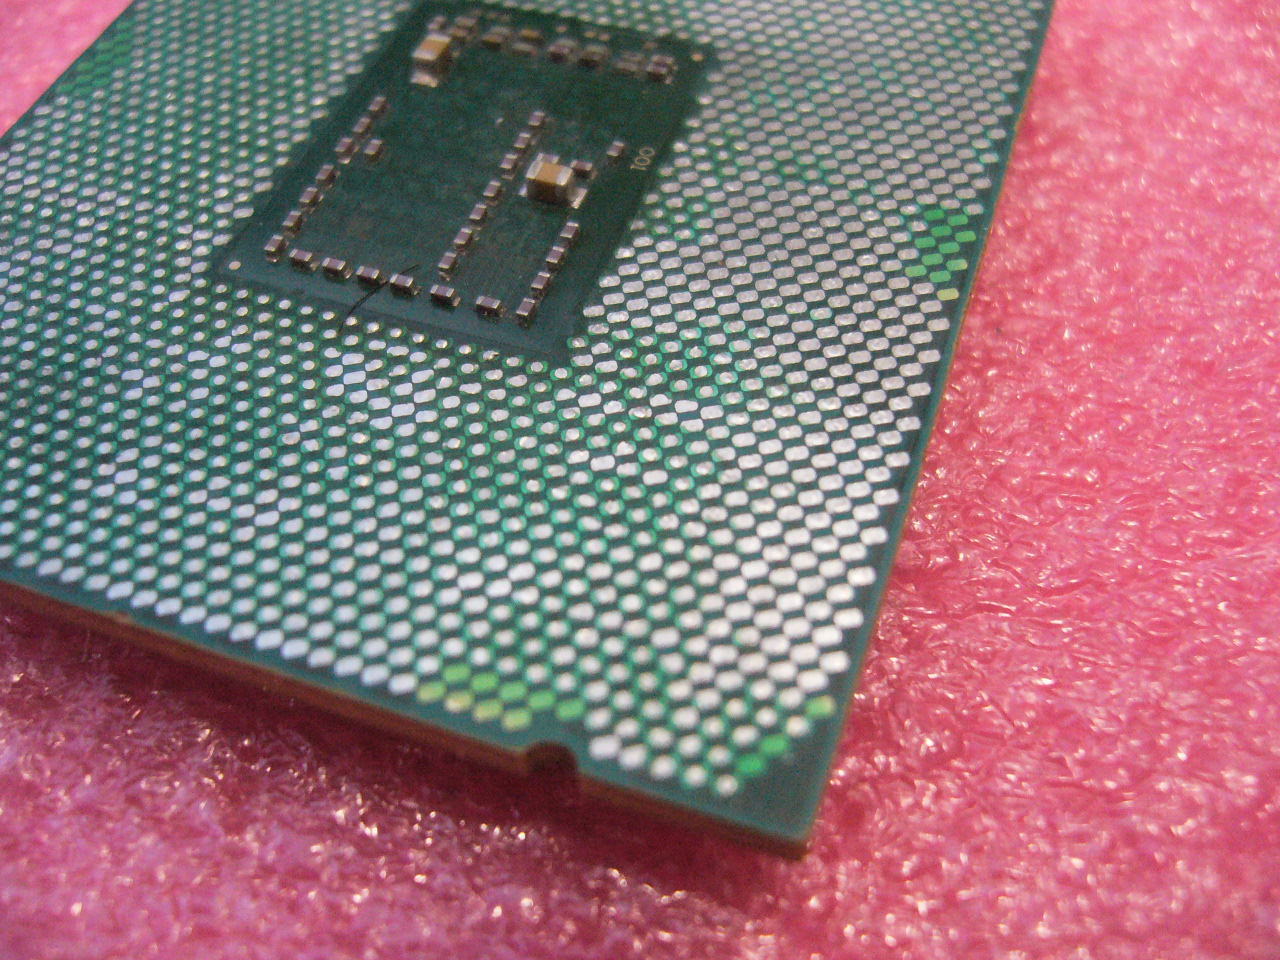 QTY 1x Intel Xeon CPU E5-2648LV3 12-Cores 1.8Ghz LGA2011 TDP 70W SR1XW - zum Schließen ins Bild klicken